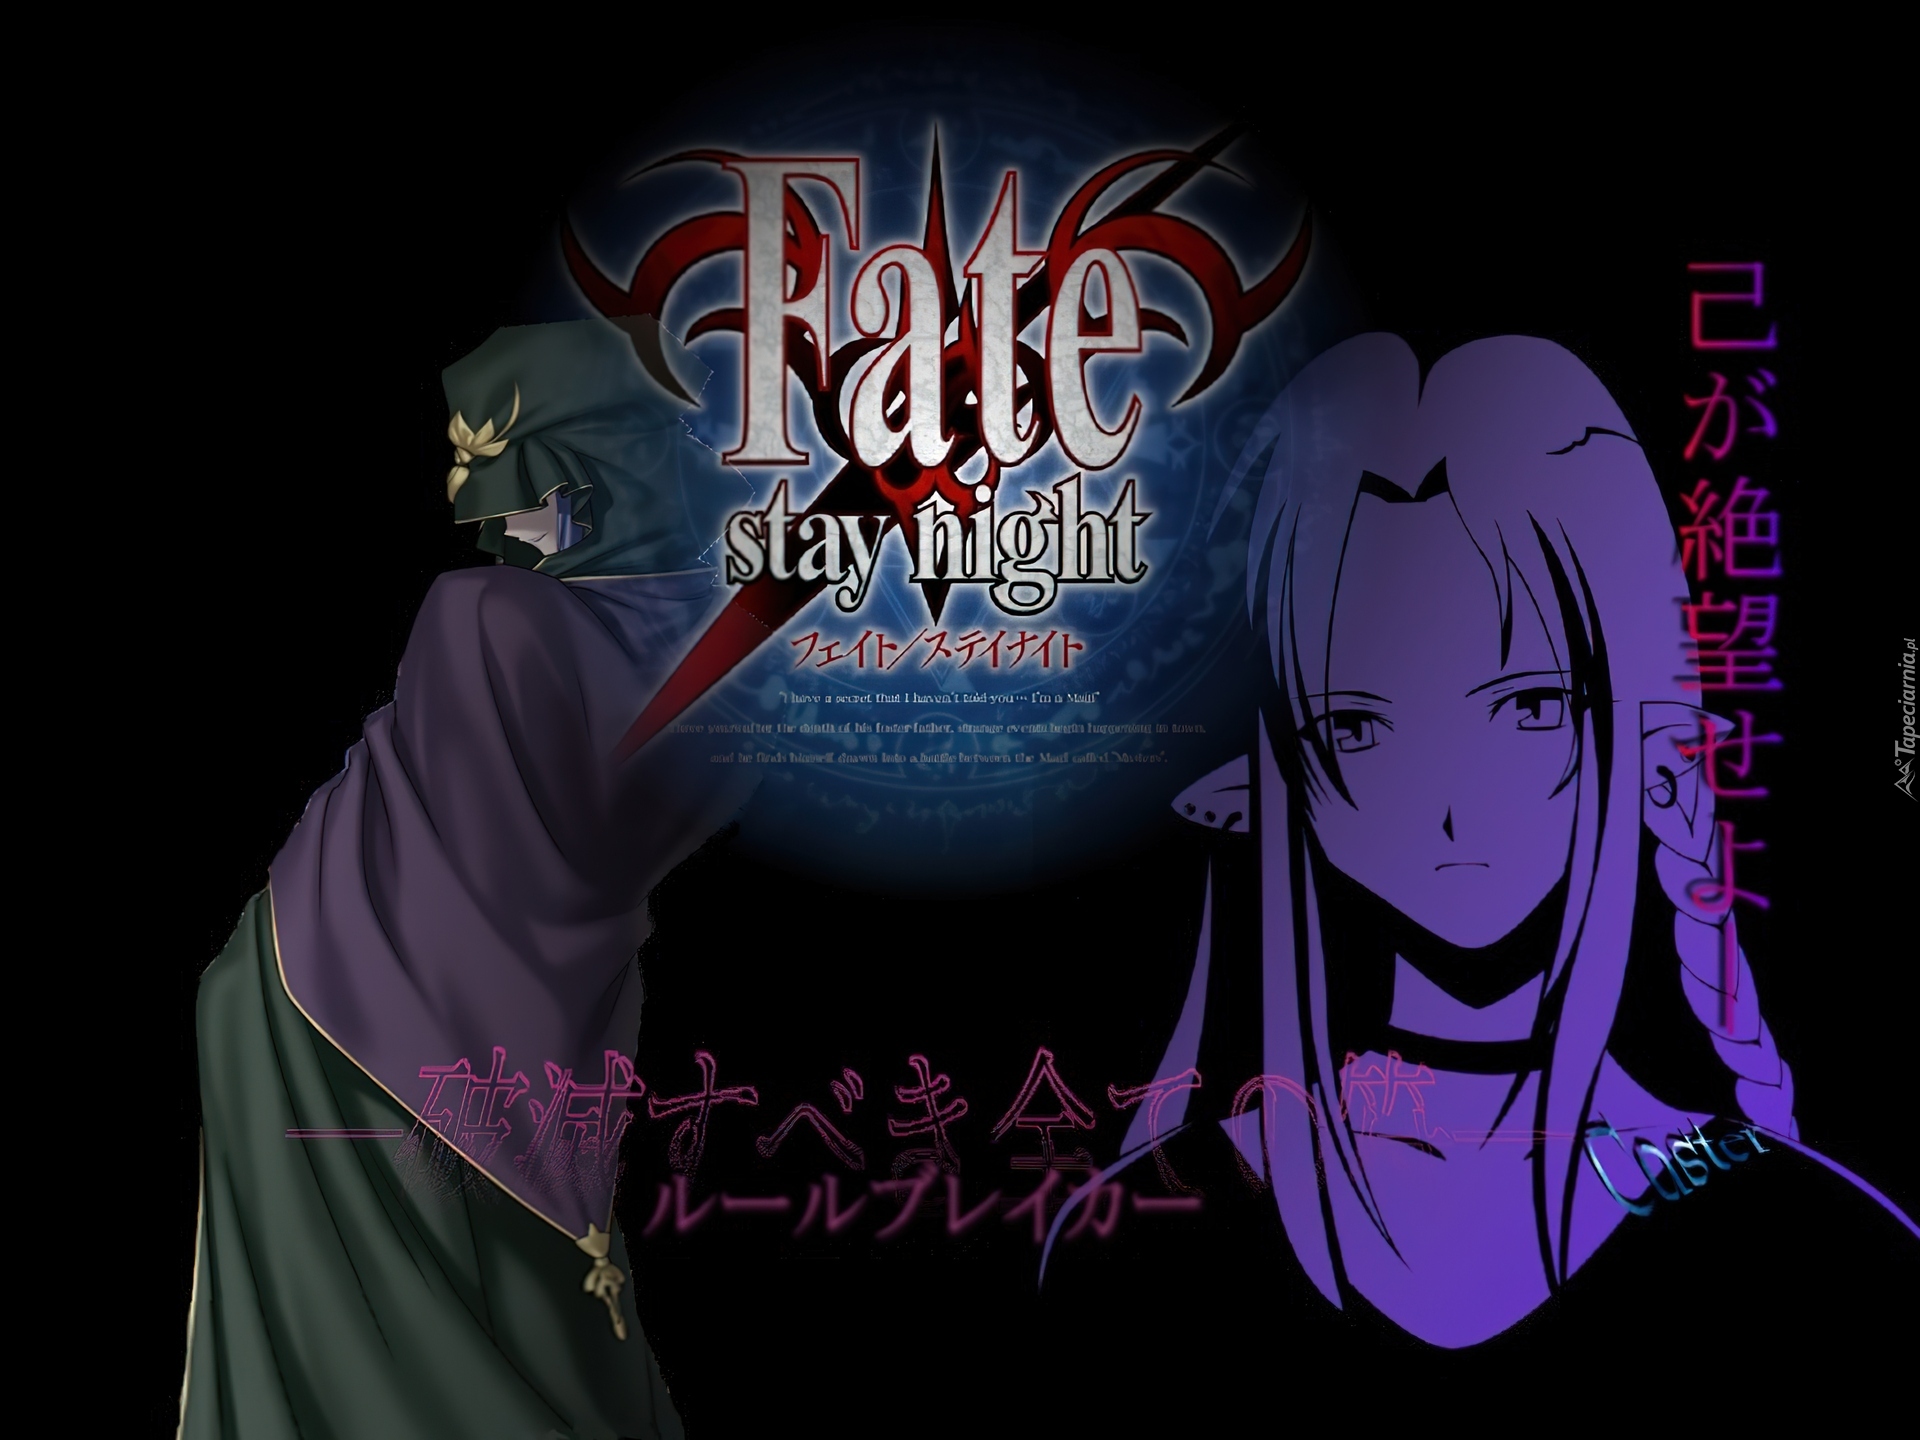 Fate Stay Night, mrok, postacie, napisy, logo